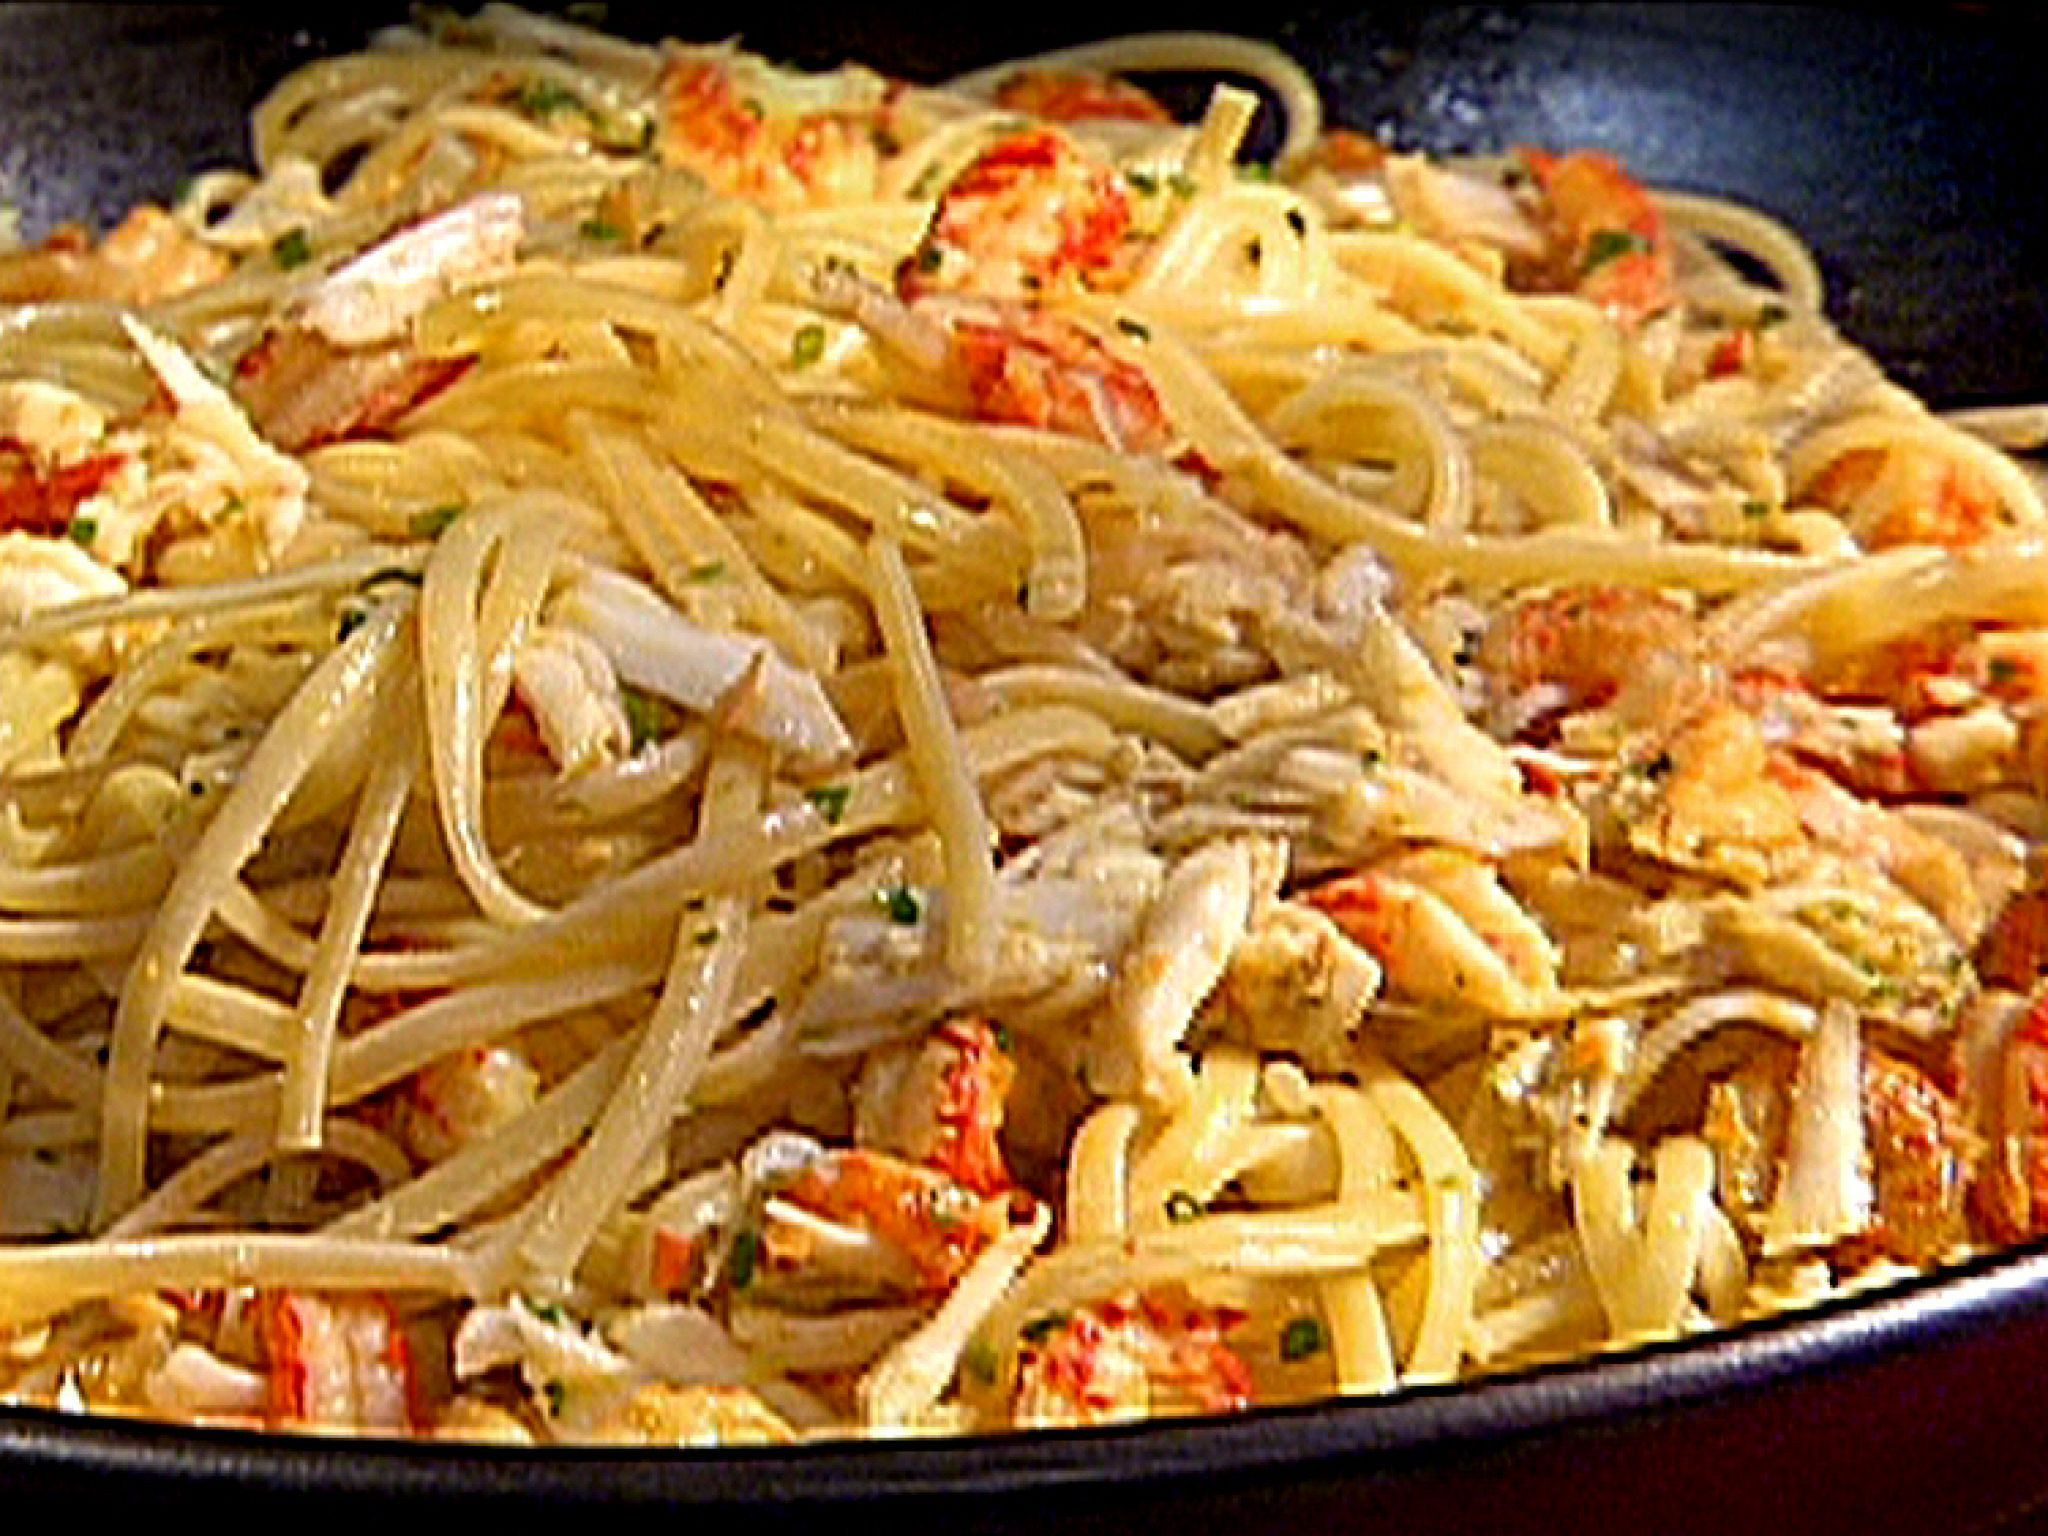 Shrimp And Crawfish Pasta
 Emerils Hot Crab and Crawfish Pasta recipe from Emeril